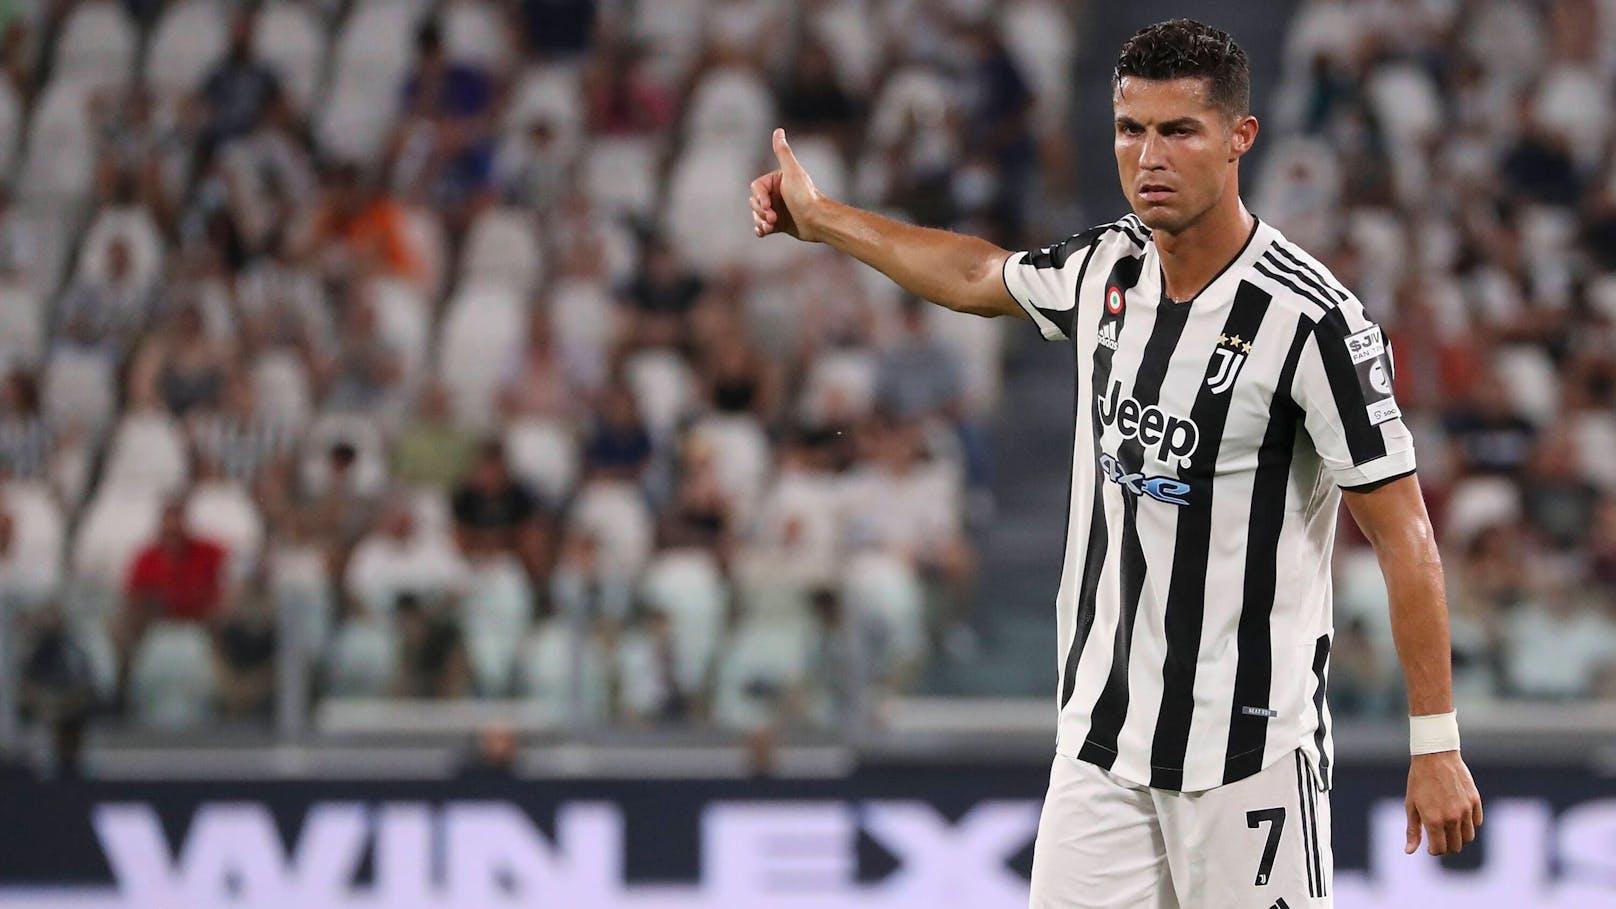 Gehaltsstreit! Ronaldo gewinnt Verfahren gegen Ex-Klub